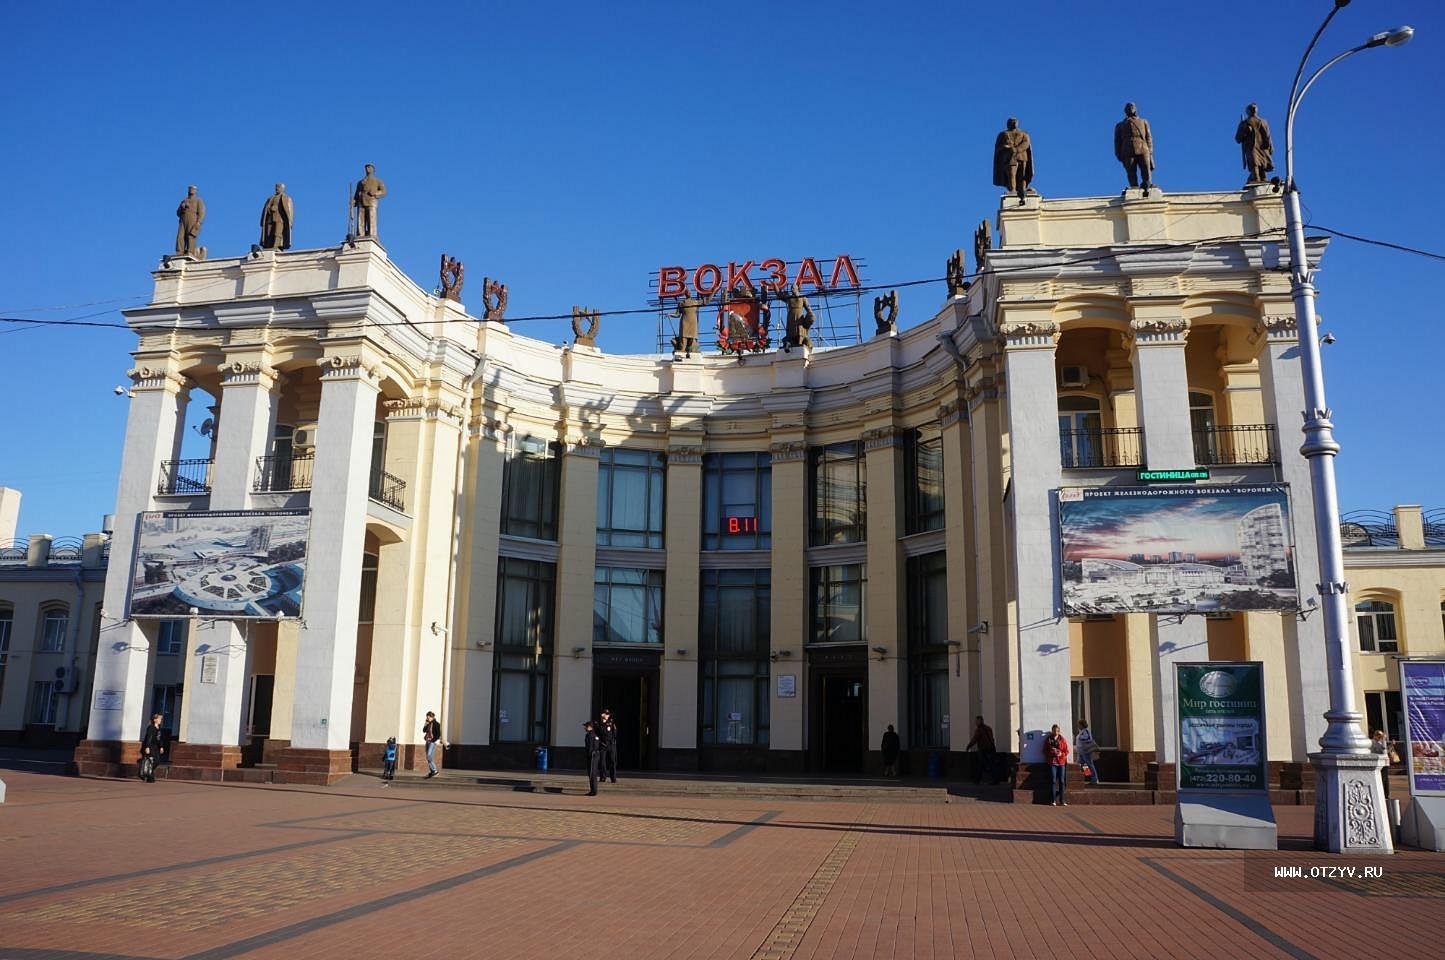 Воронежский вокзал Воронеж